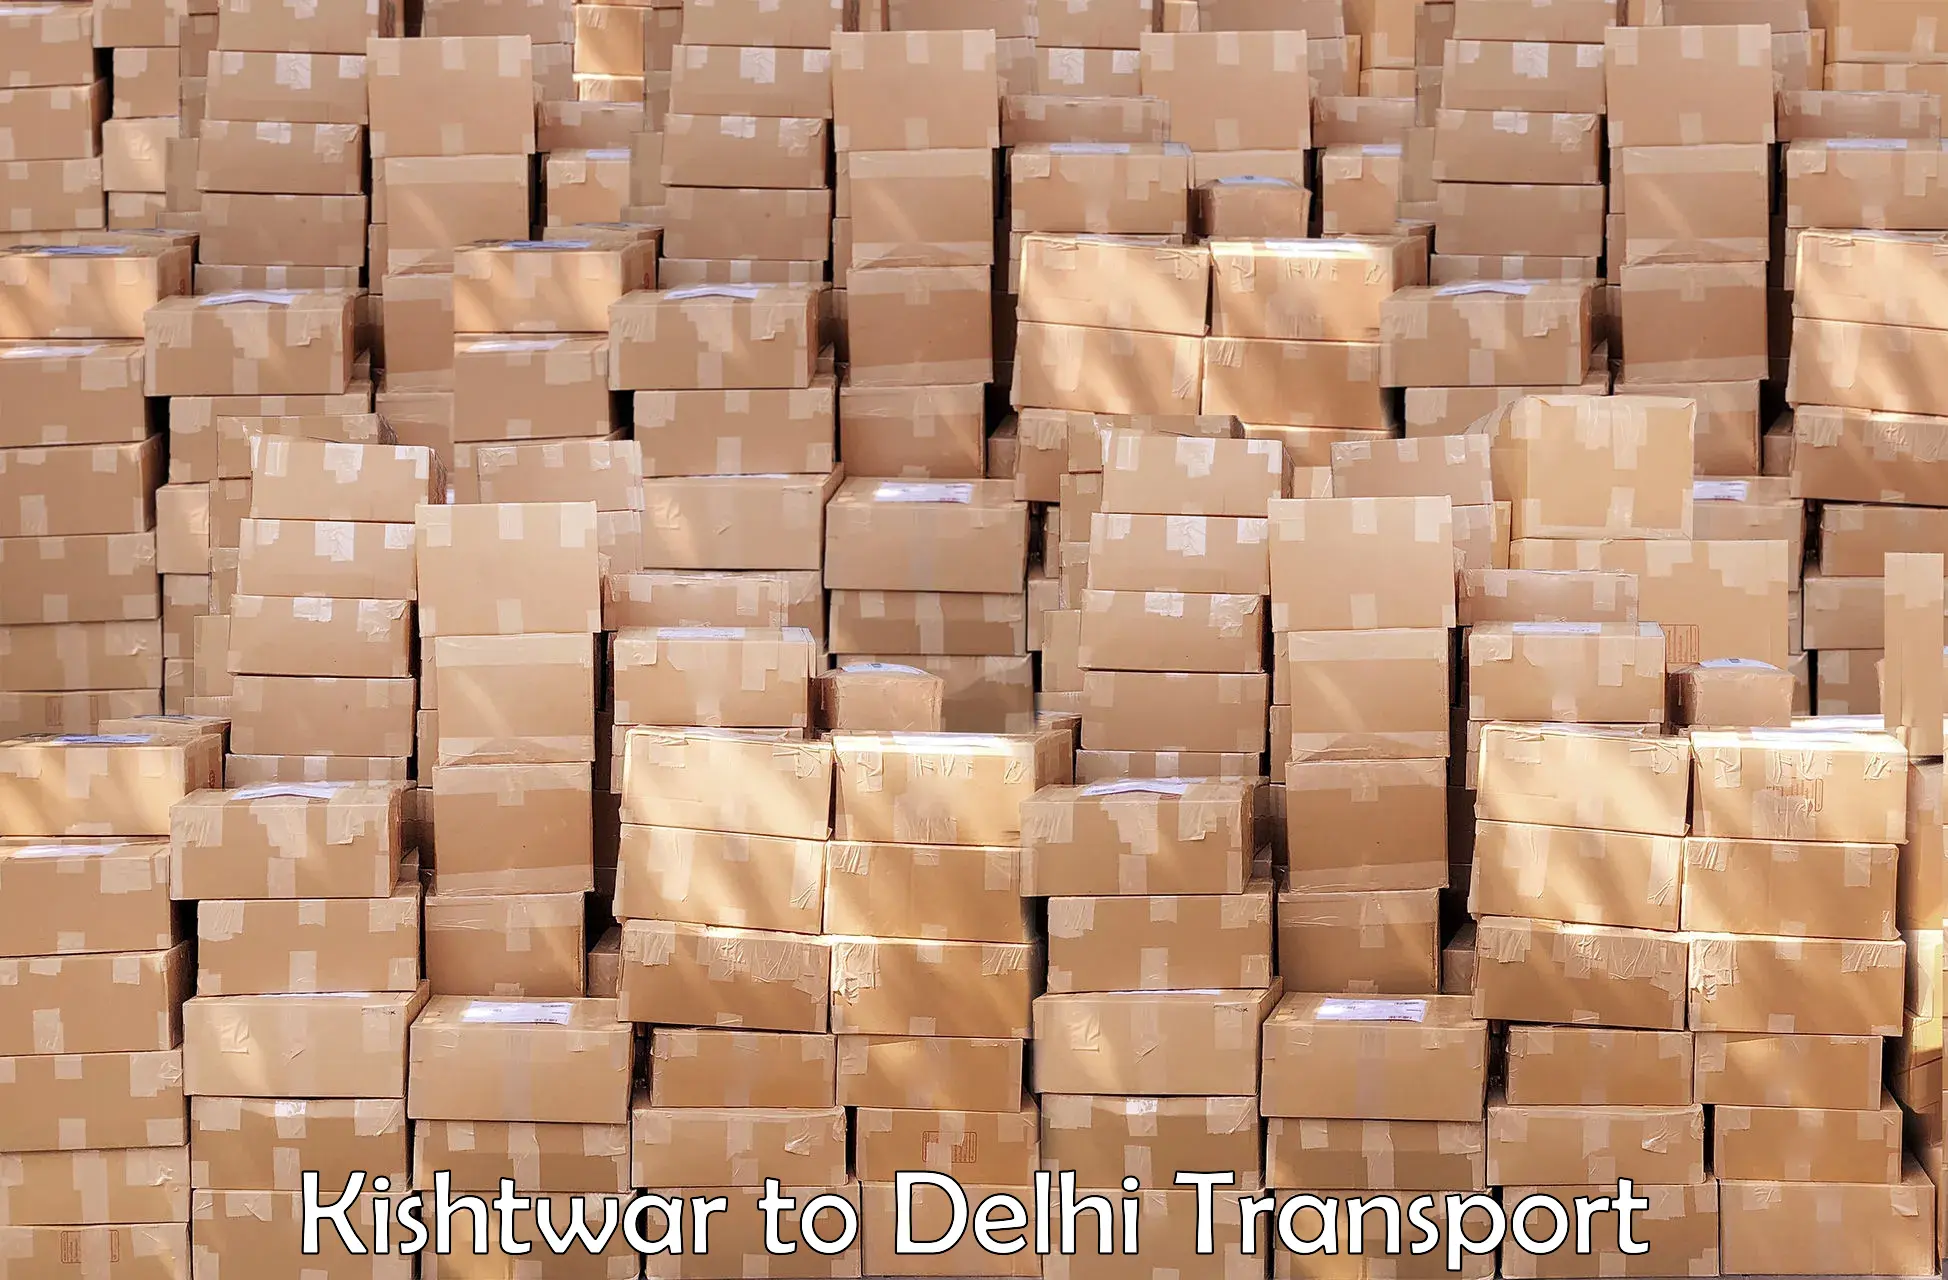 Truck transport companies in India Kishtwar to Kalkaji